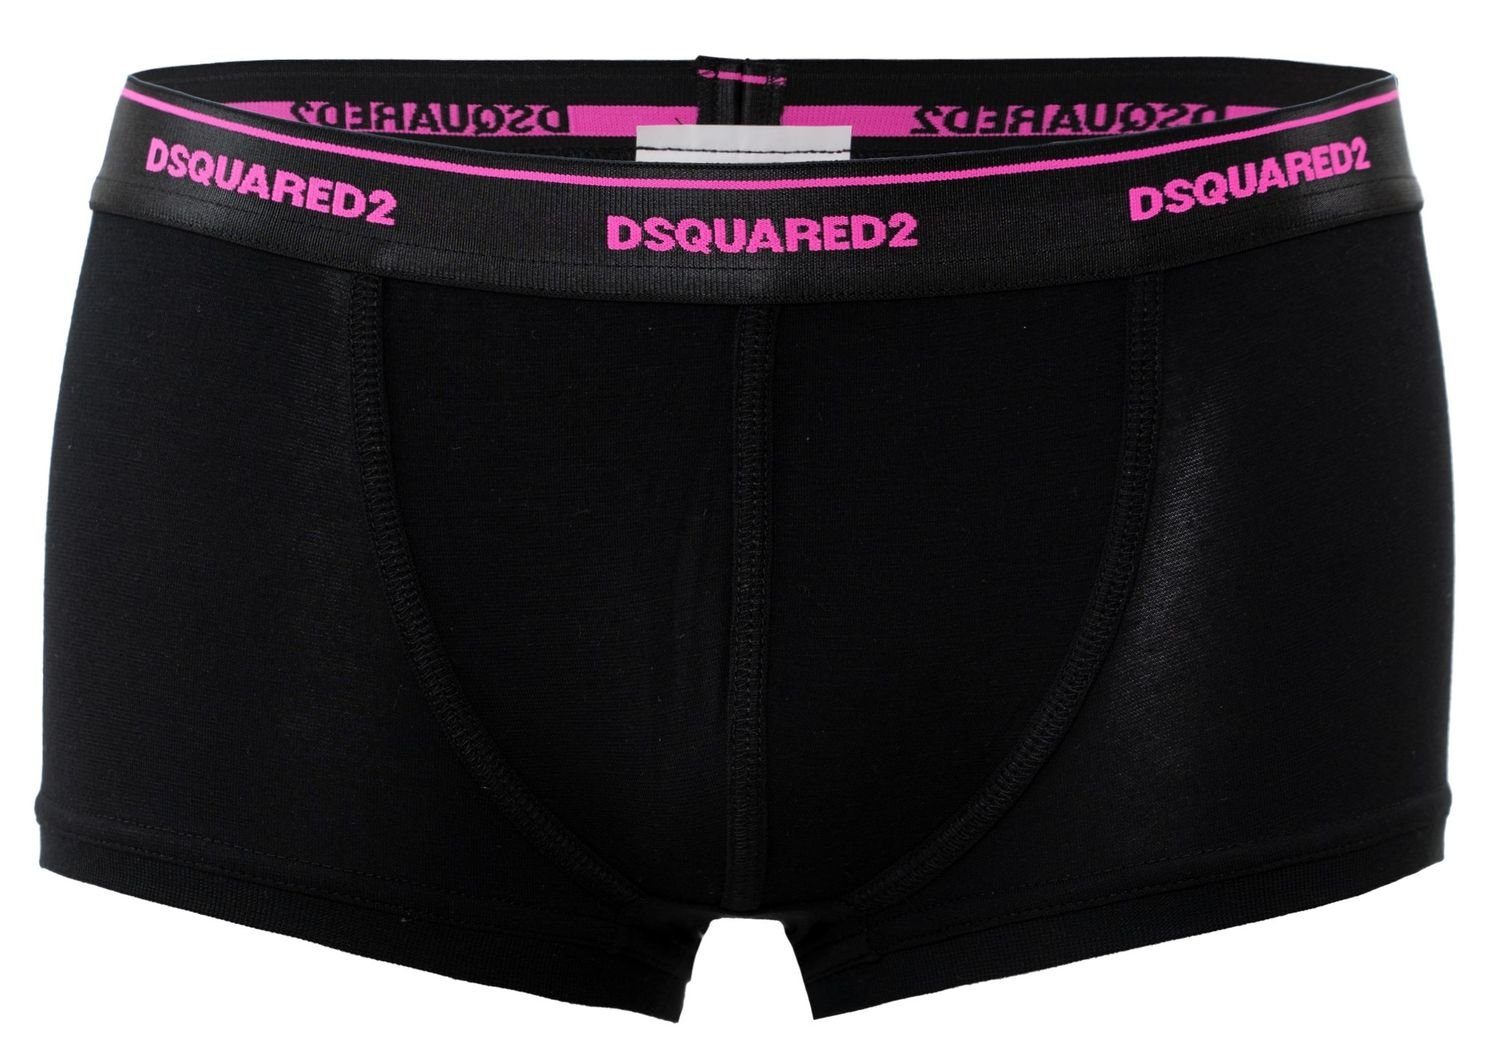 Dsquared2 Trunk Dsquared2 Boxershorts / Pants / Shorts / Boxer in schwarz Größe M / L / XL / XXL (1-St)